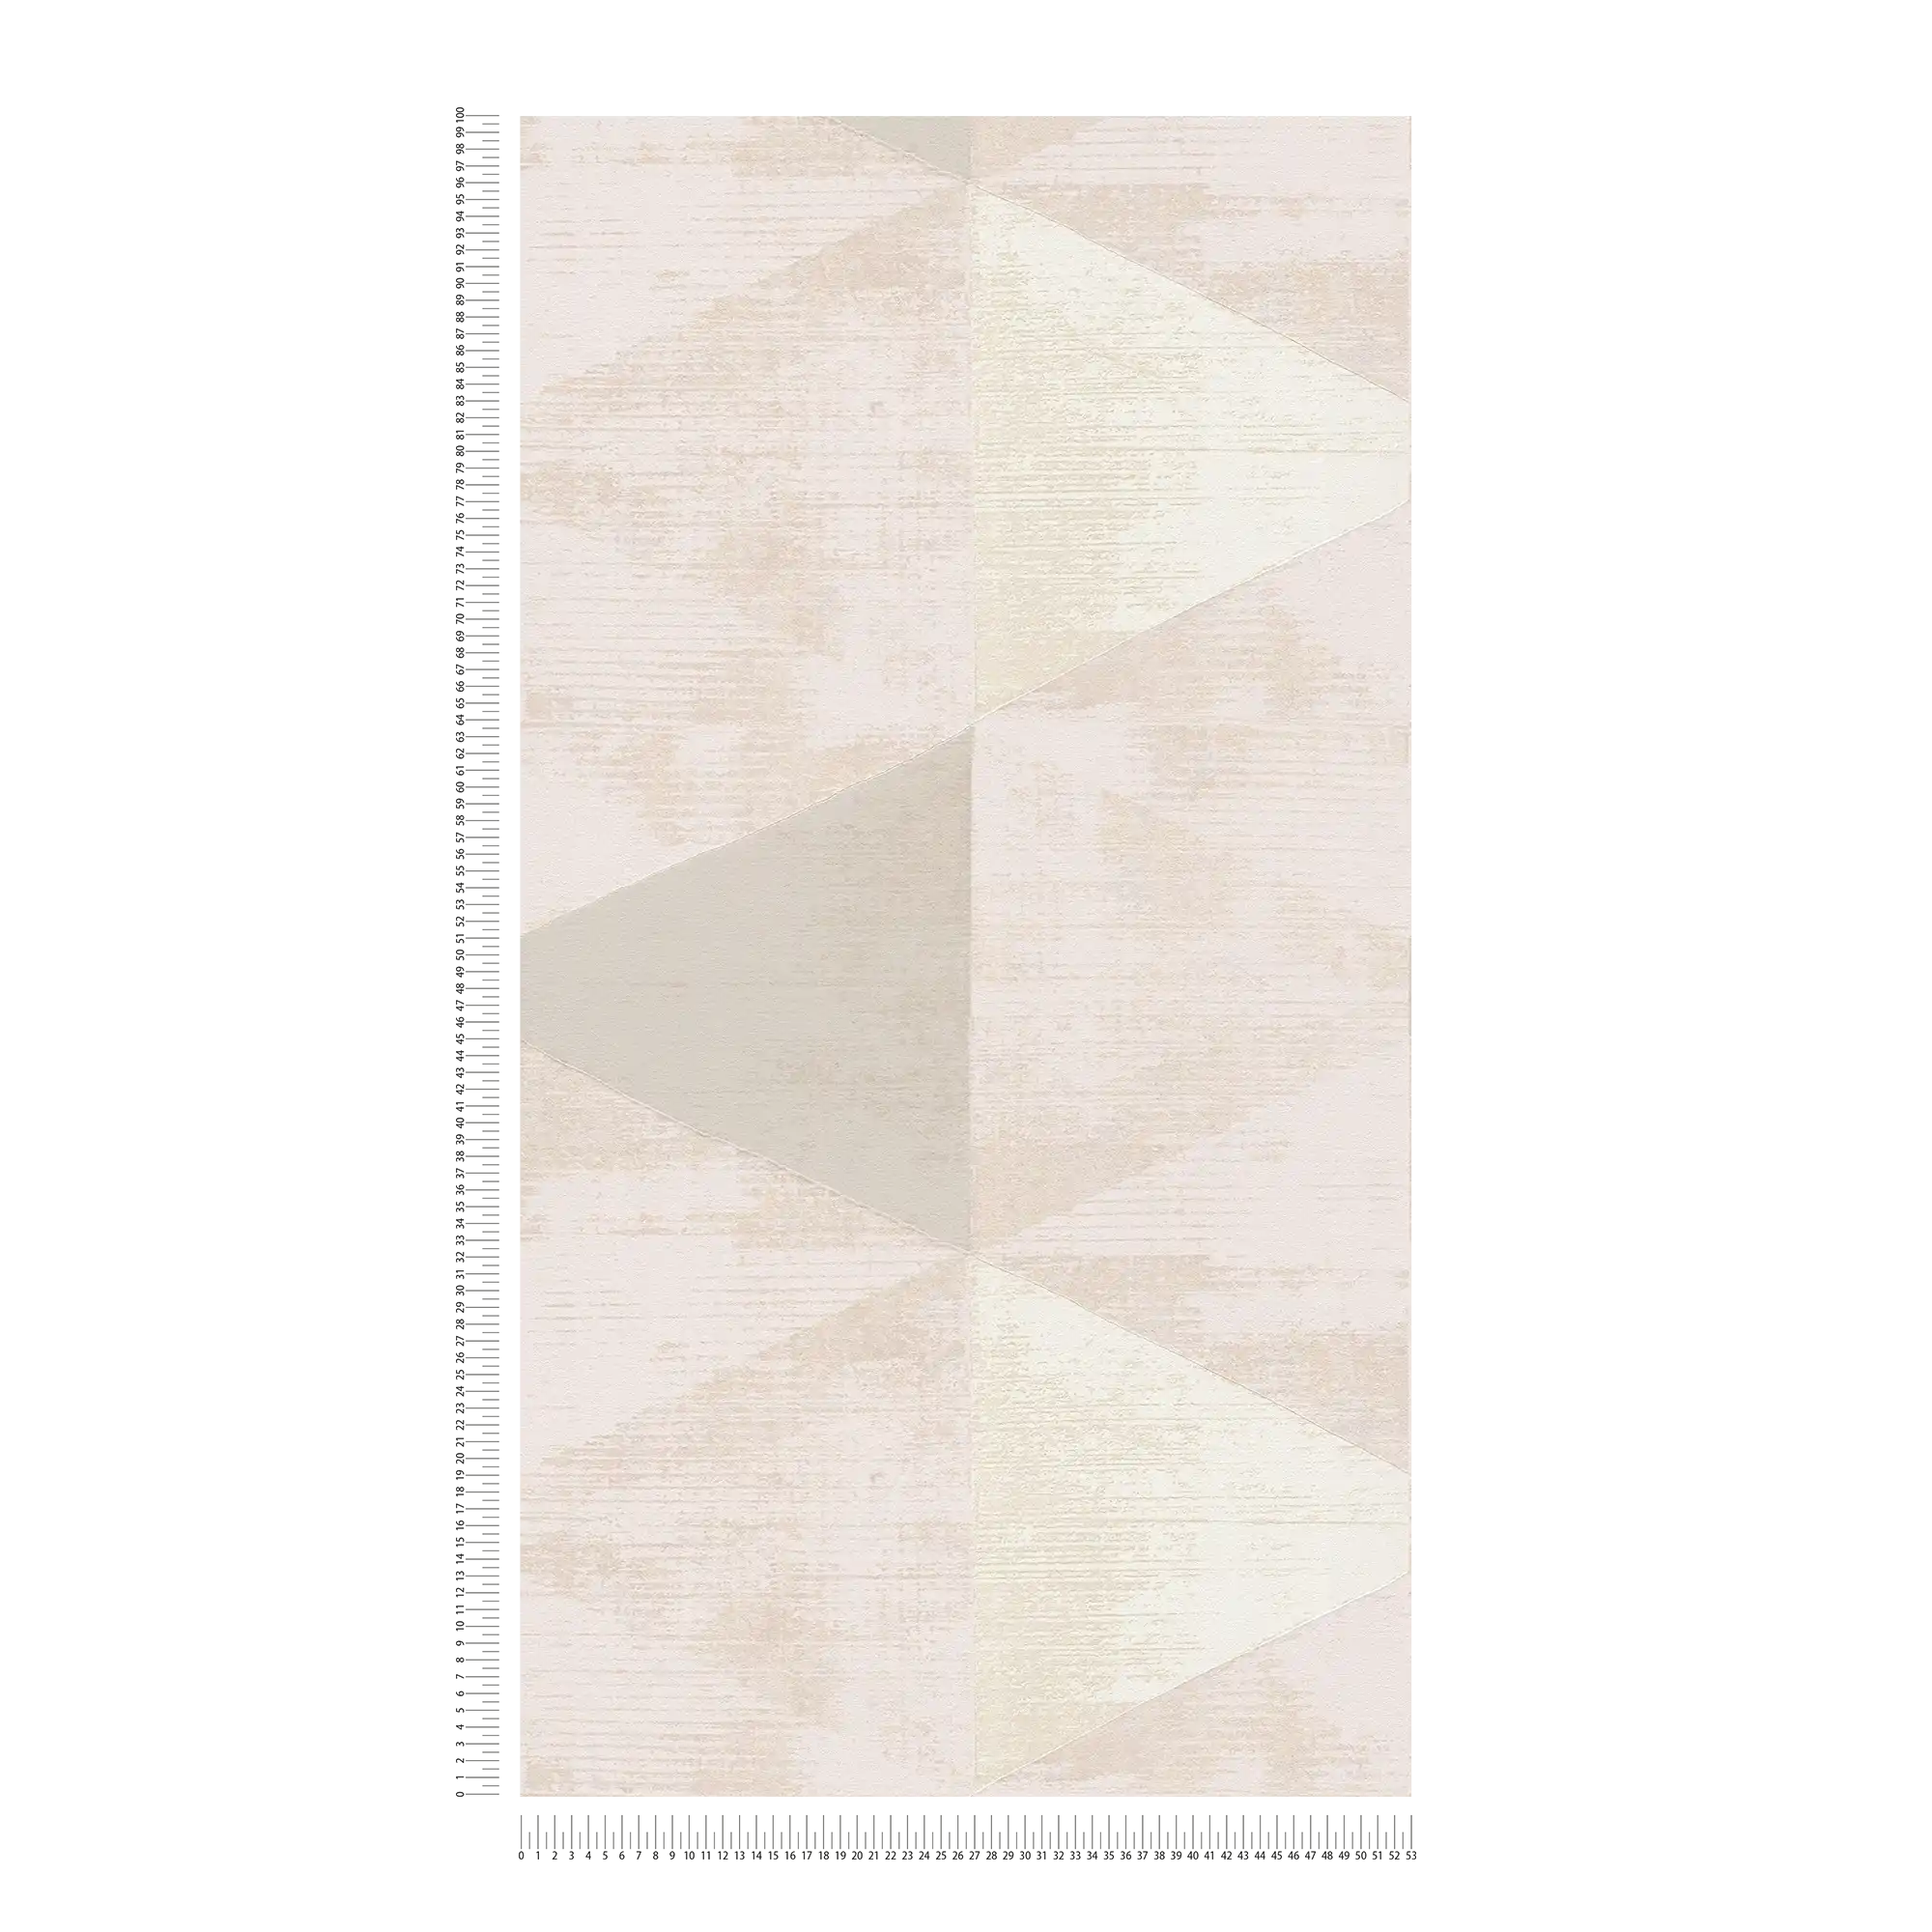             Carta da parati in tessuto non tessuto con accenti metallici - metallizzata, beige, crema
        